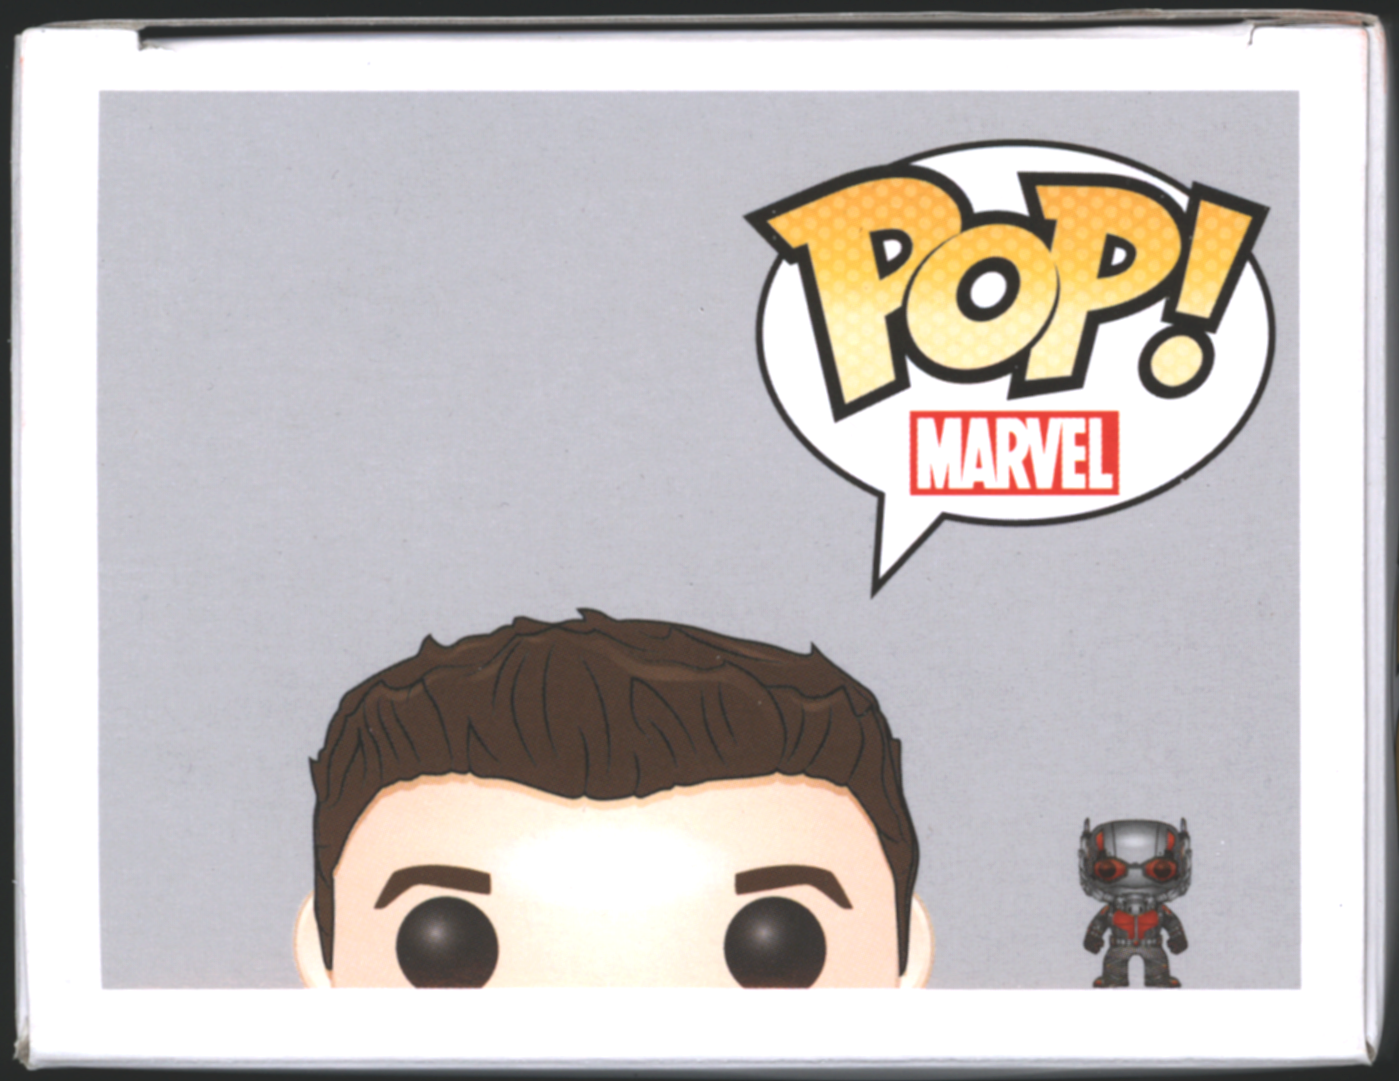 Funko Pop! Ant-Man #87 | Marvel | Exclusive